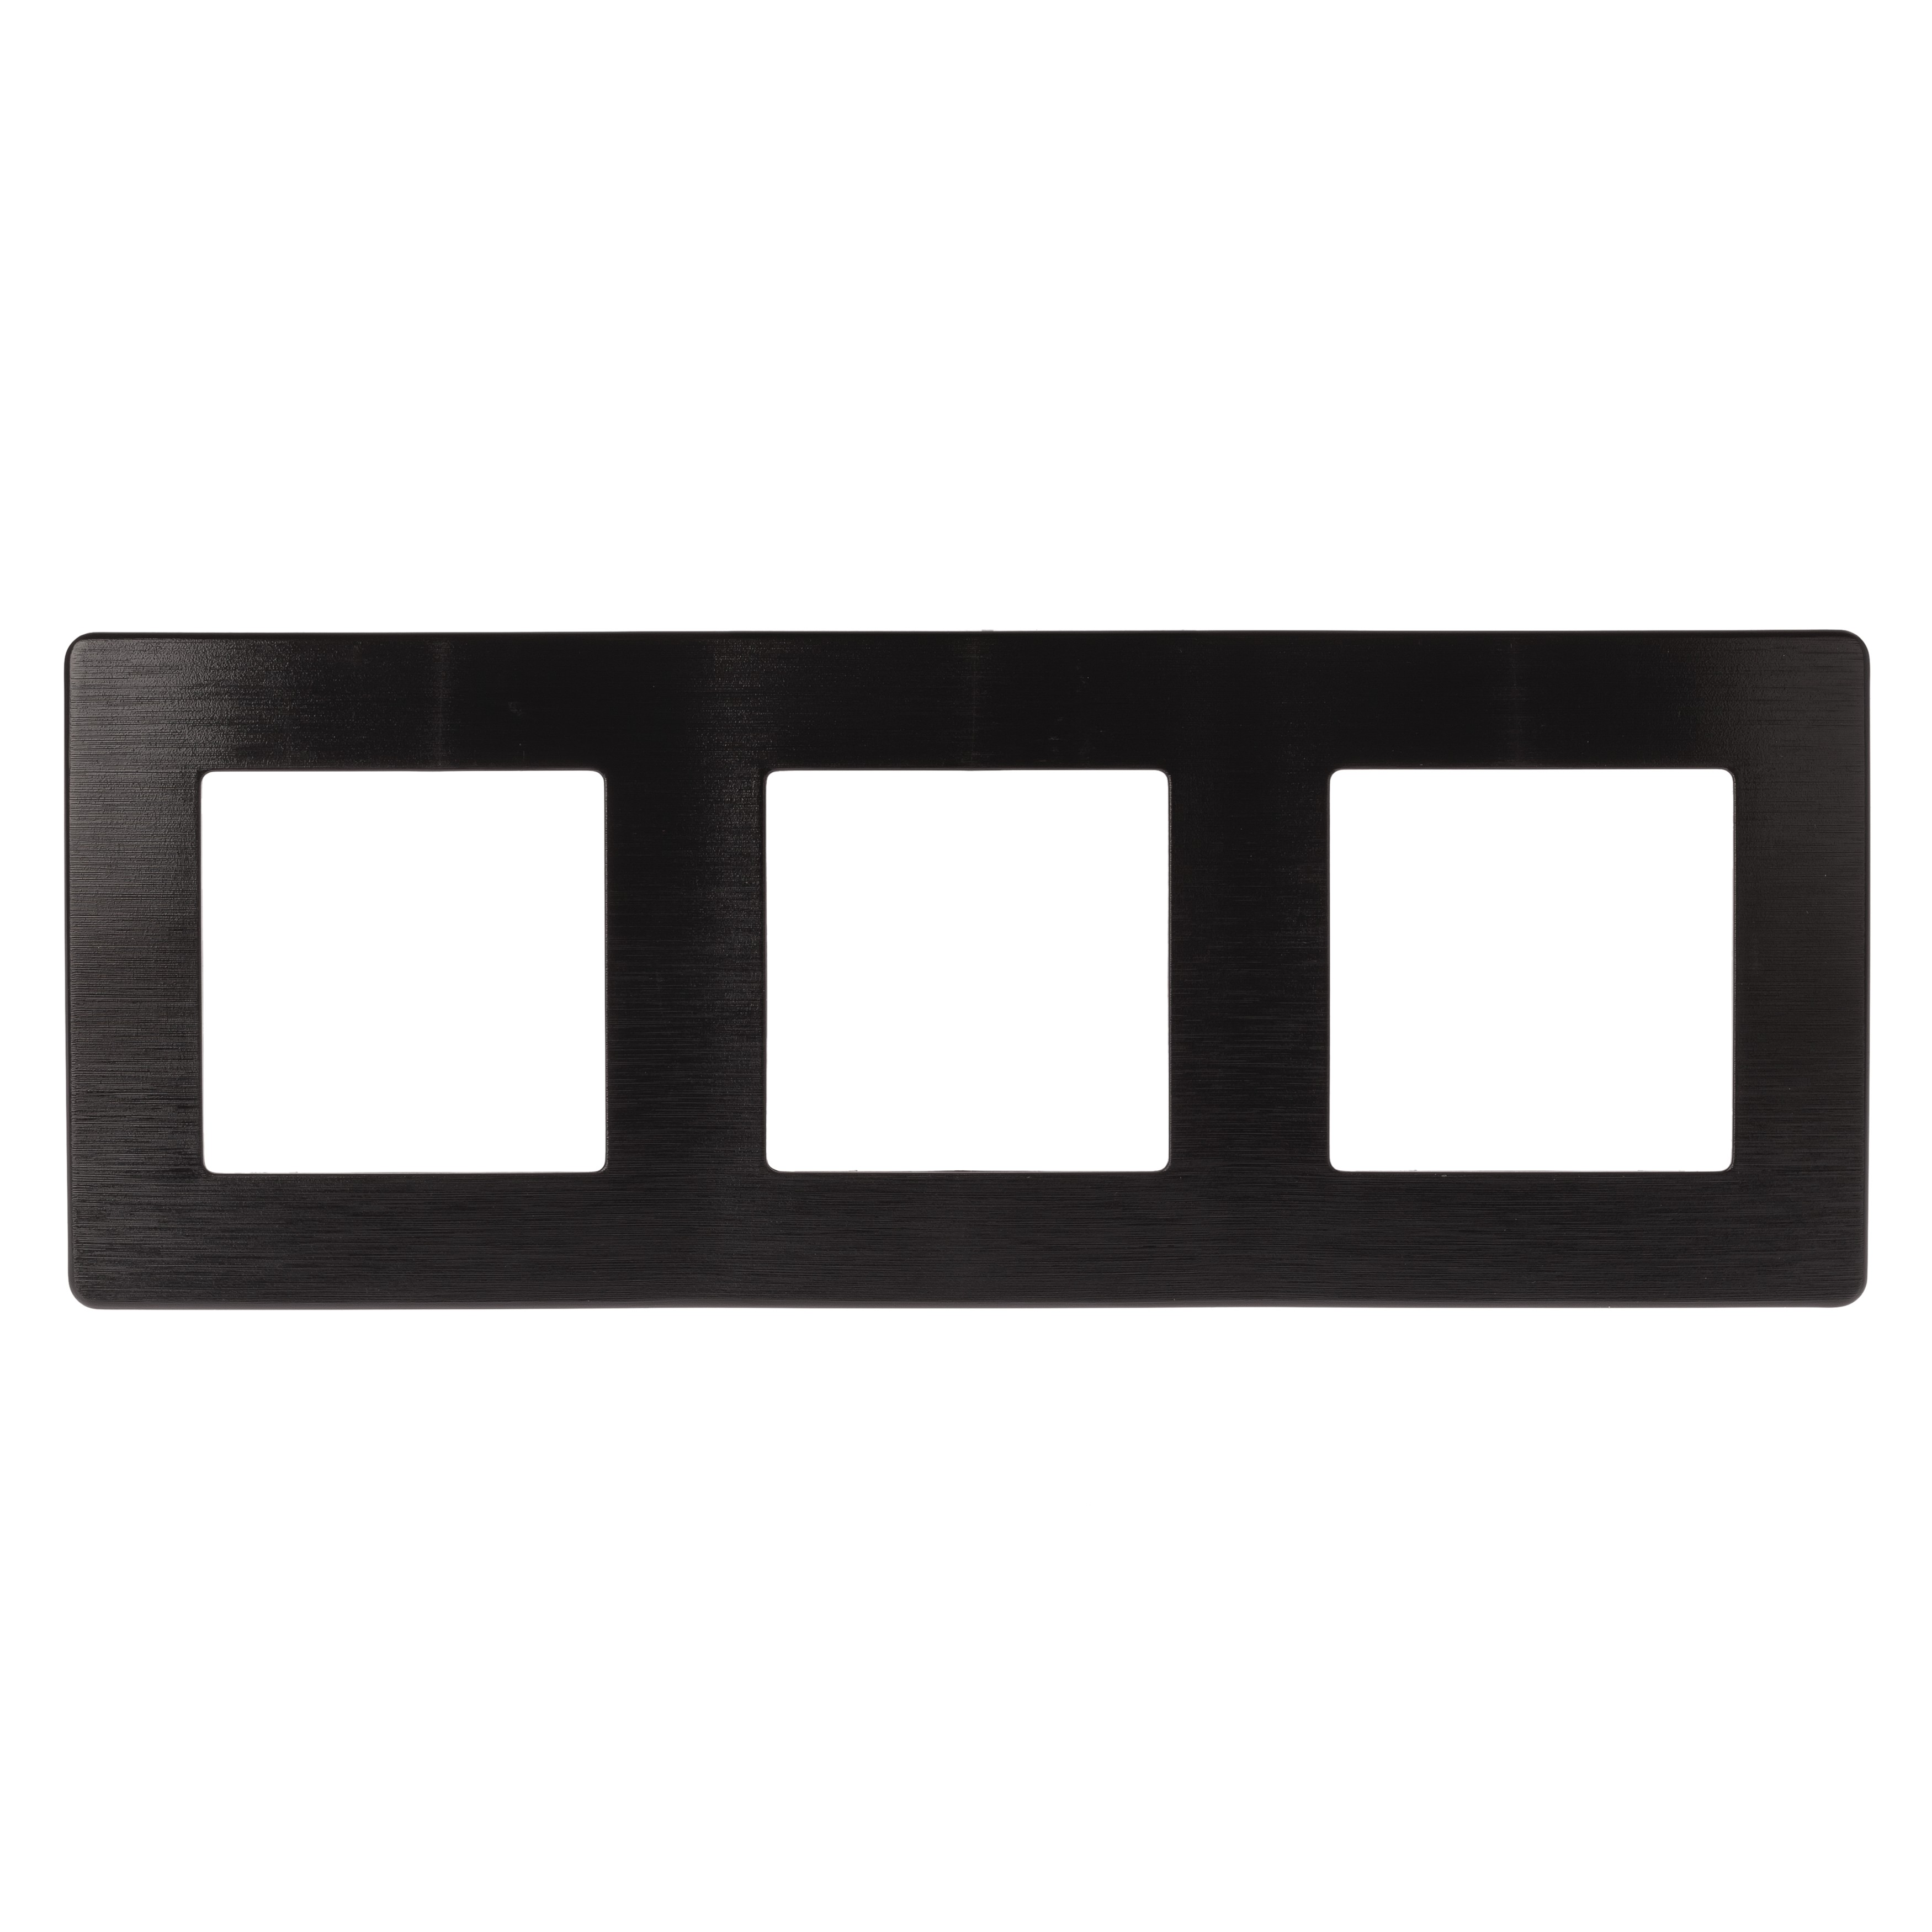 Рамка для розеток и выключателей ЭРА Серия 12 12-5103-06 на 3 поста, Сатин, чёрный